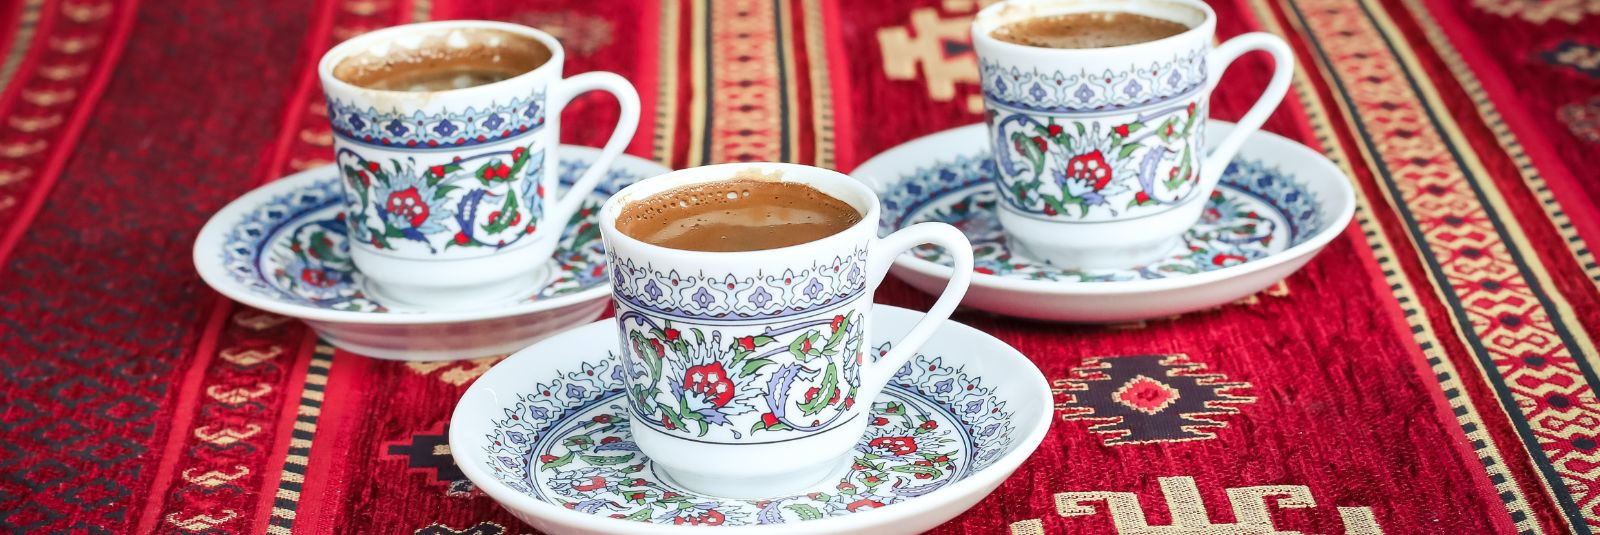 Avasta Türgi Maitsemaailm Meie Türgi toiduainete ja kultuuripärandiga seotud toodete kauplus pakub sulle võimalust sukelduda autentsetesse Türgi maitsetesse ja 